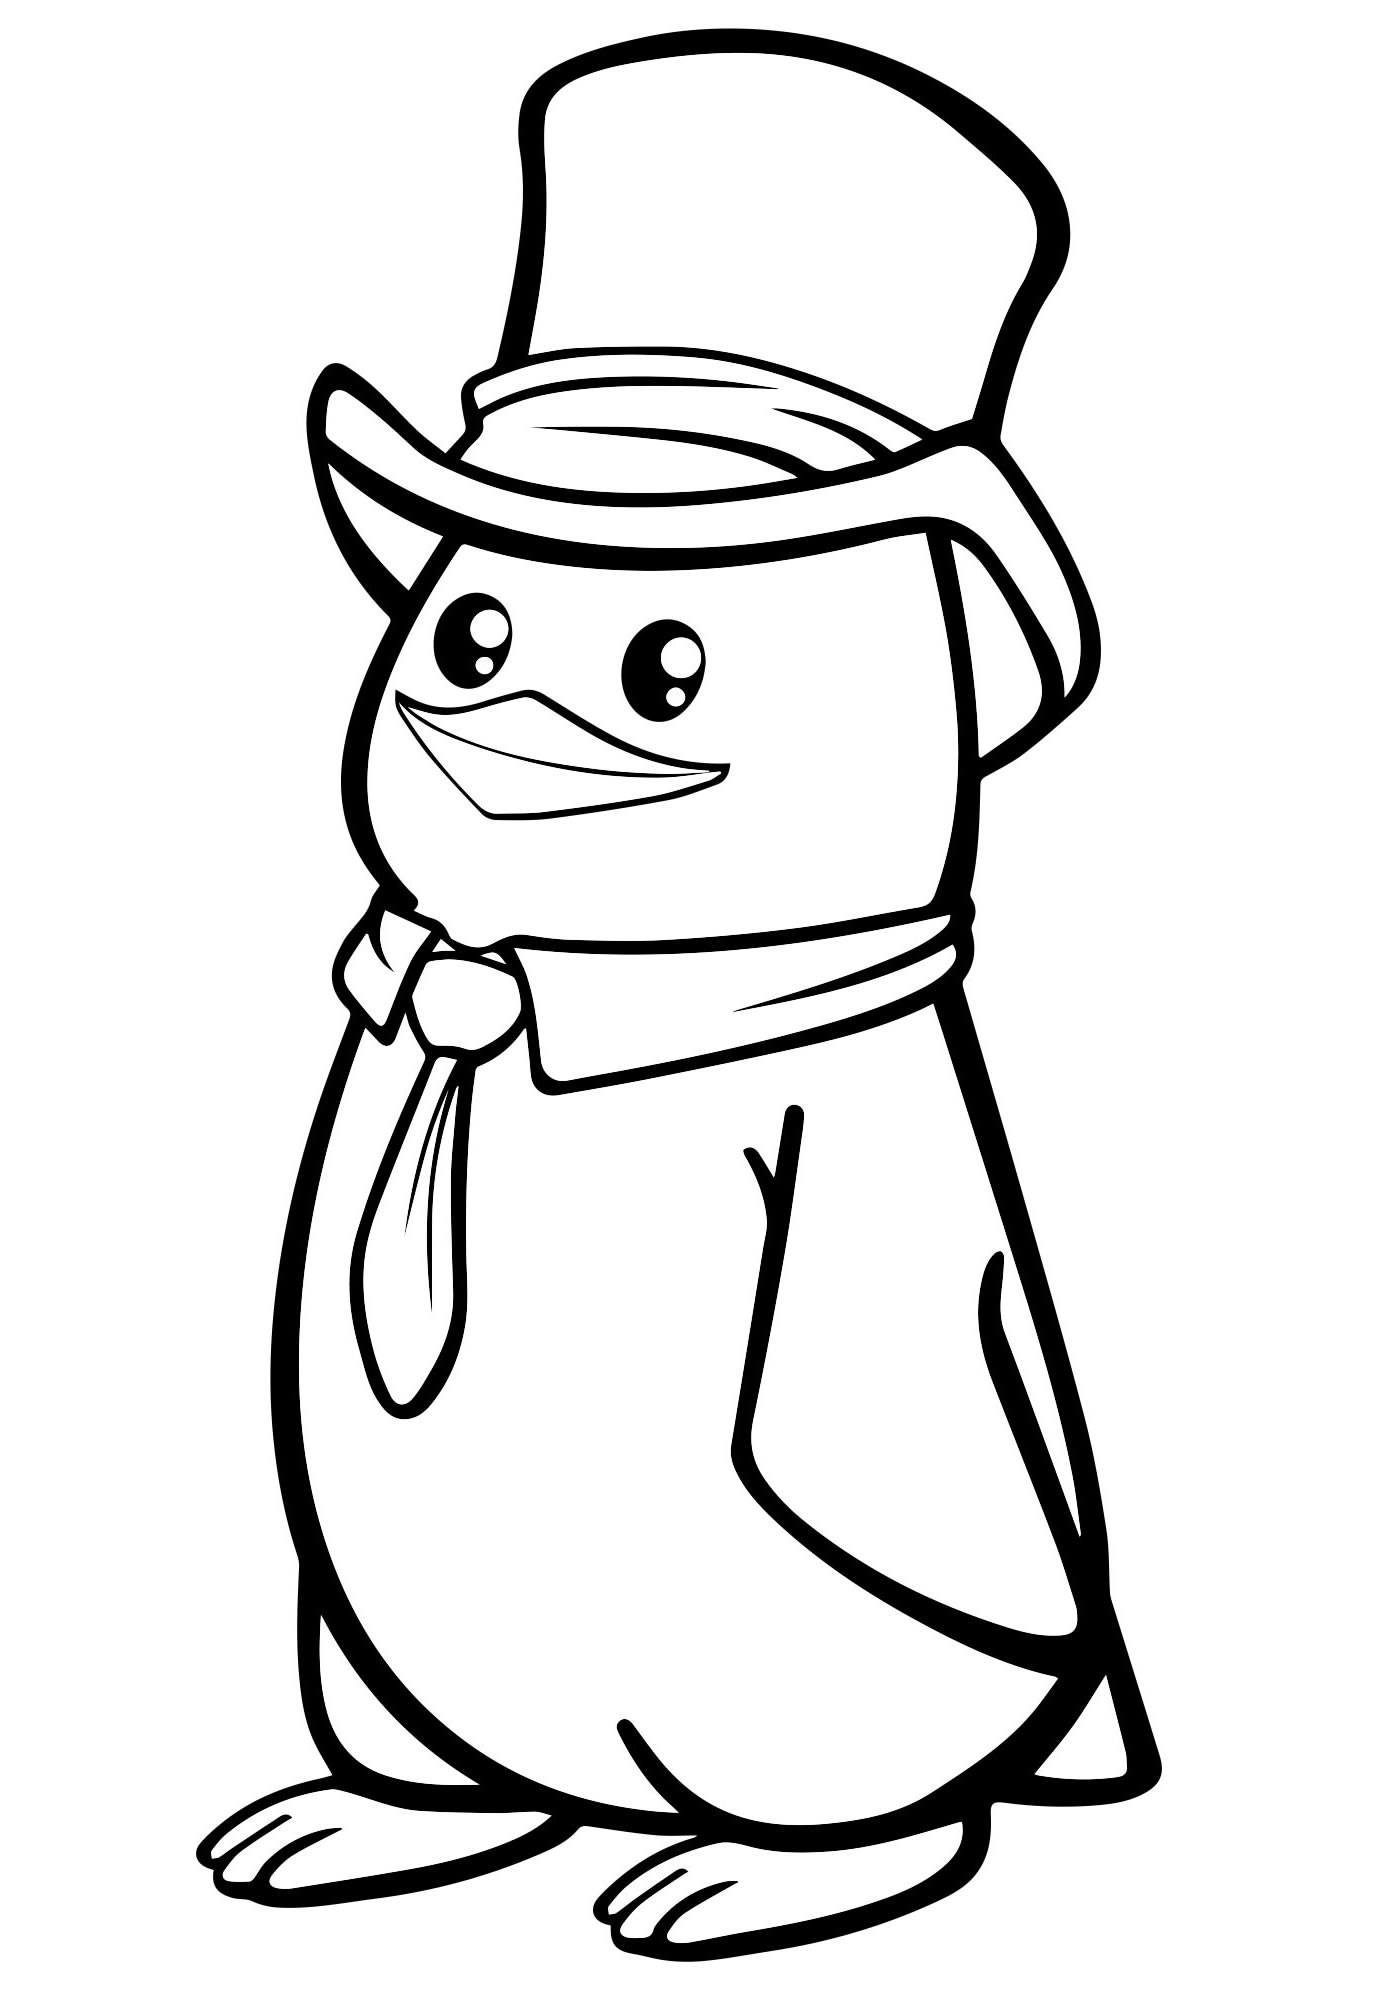 Пингвин из мультфильма раскраска для детей